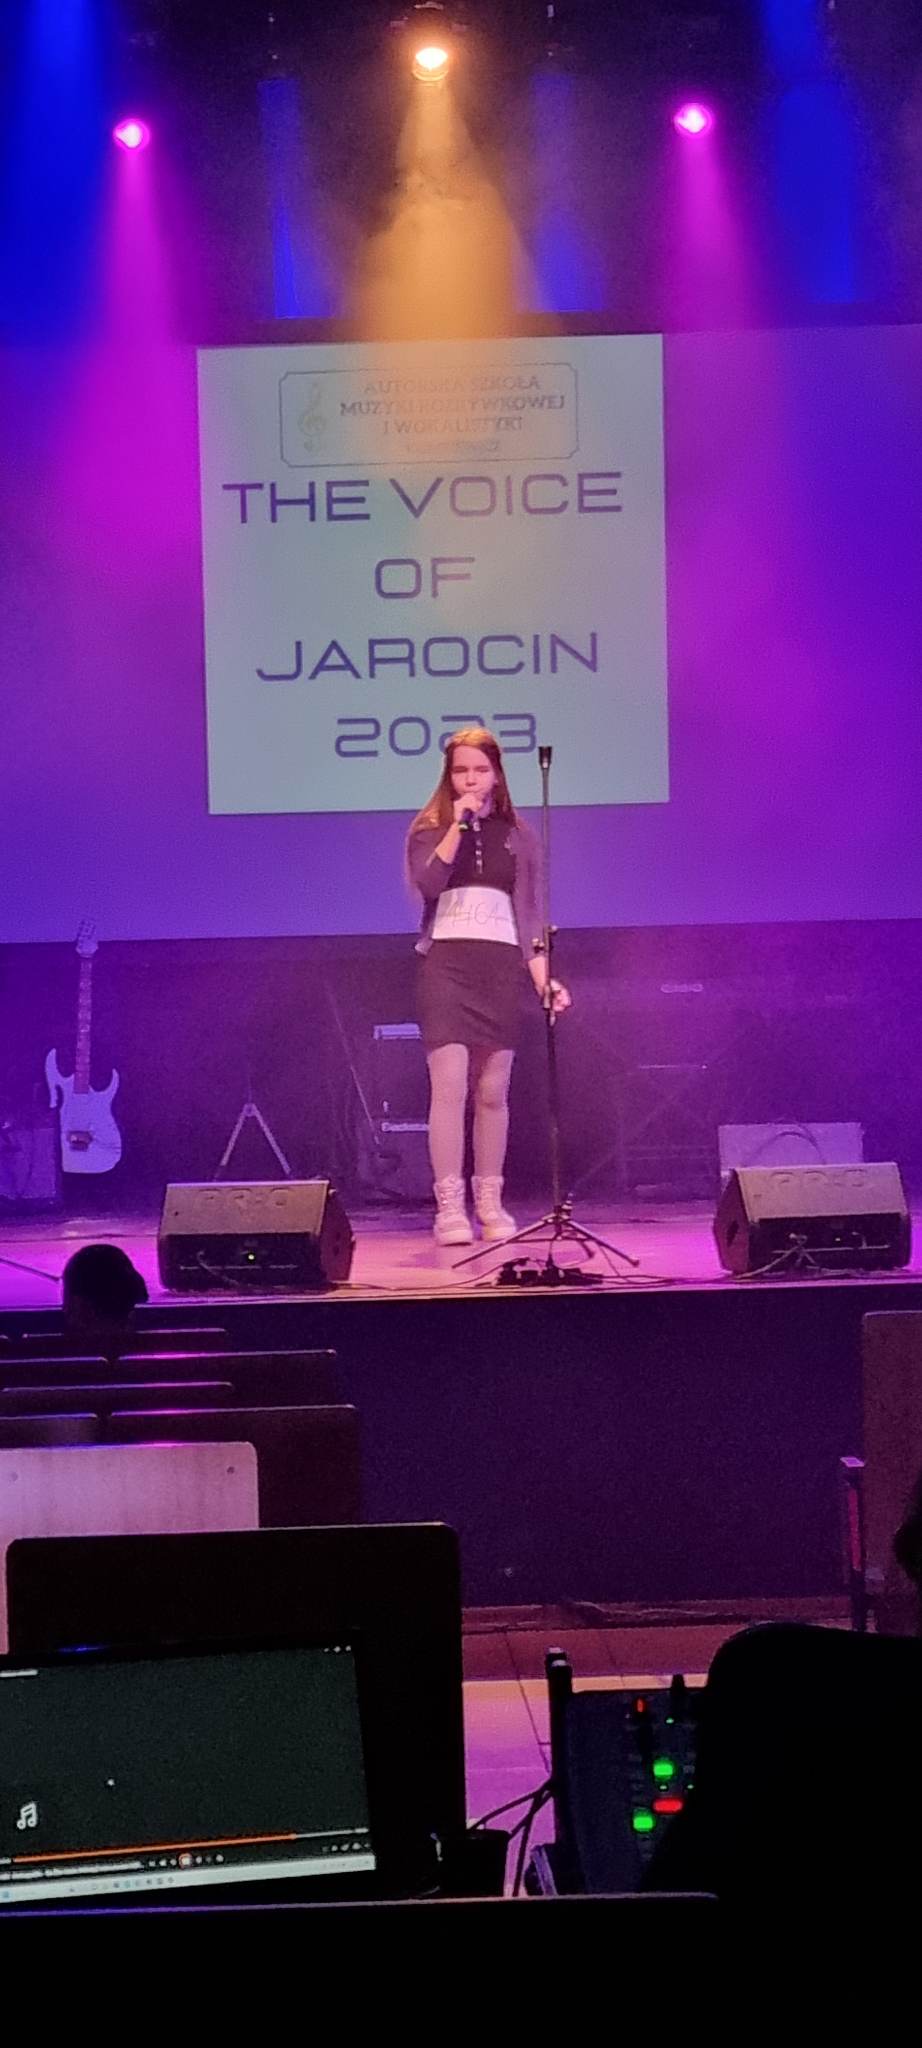 Nasza uczennica w The voice of Jarocin